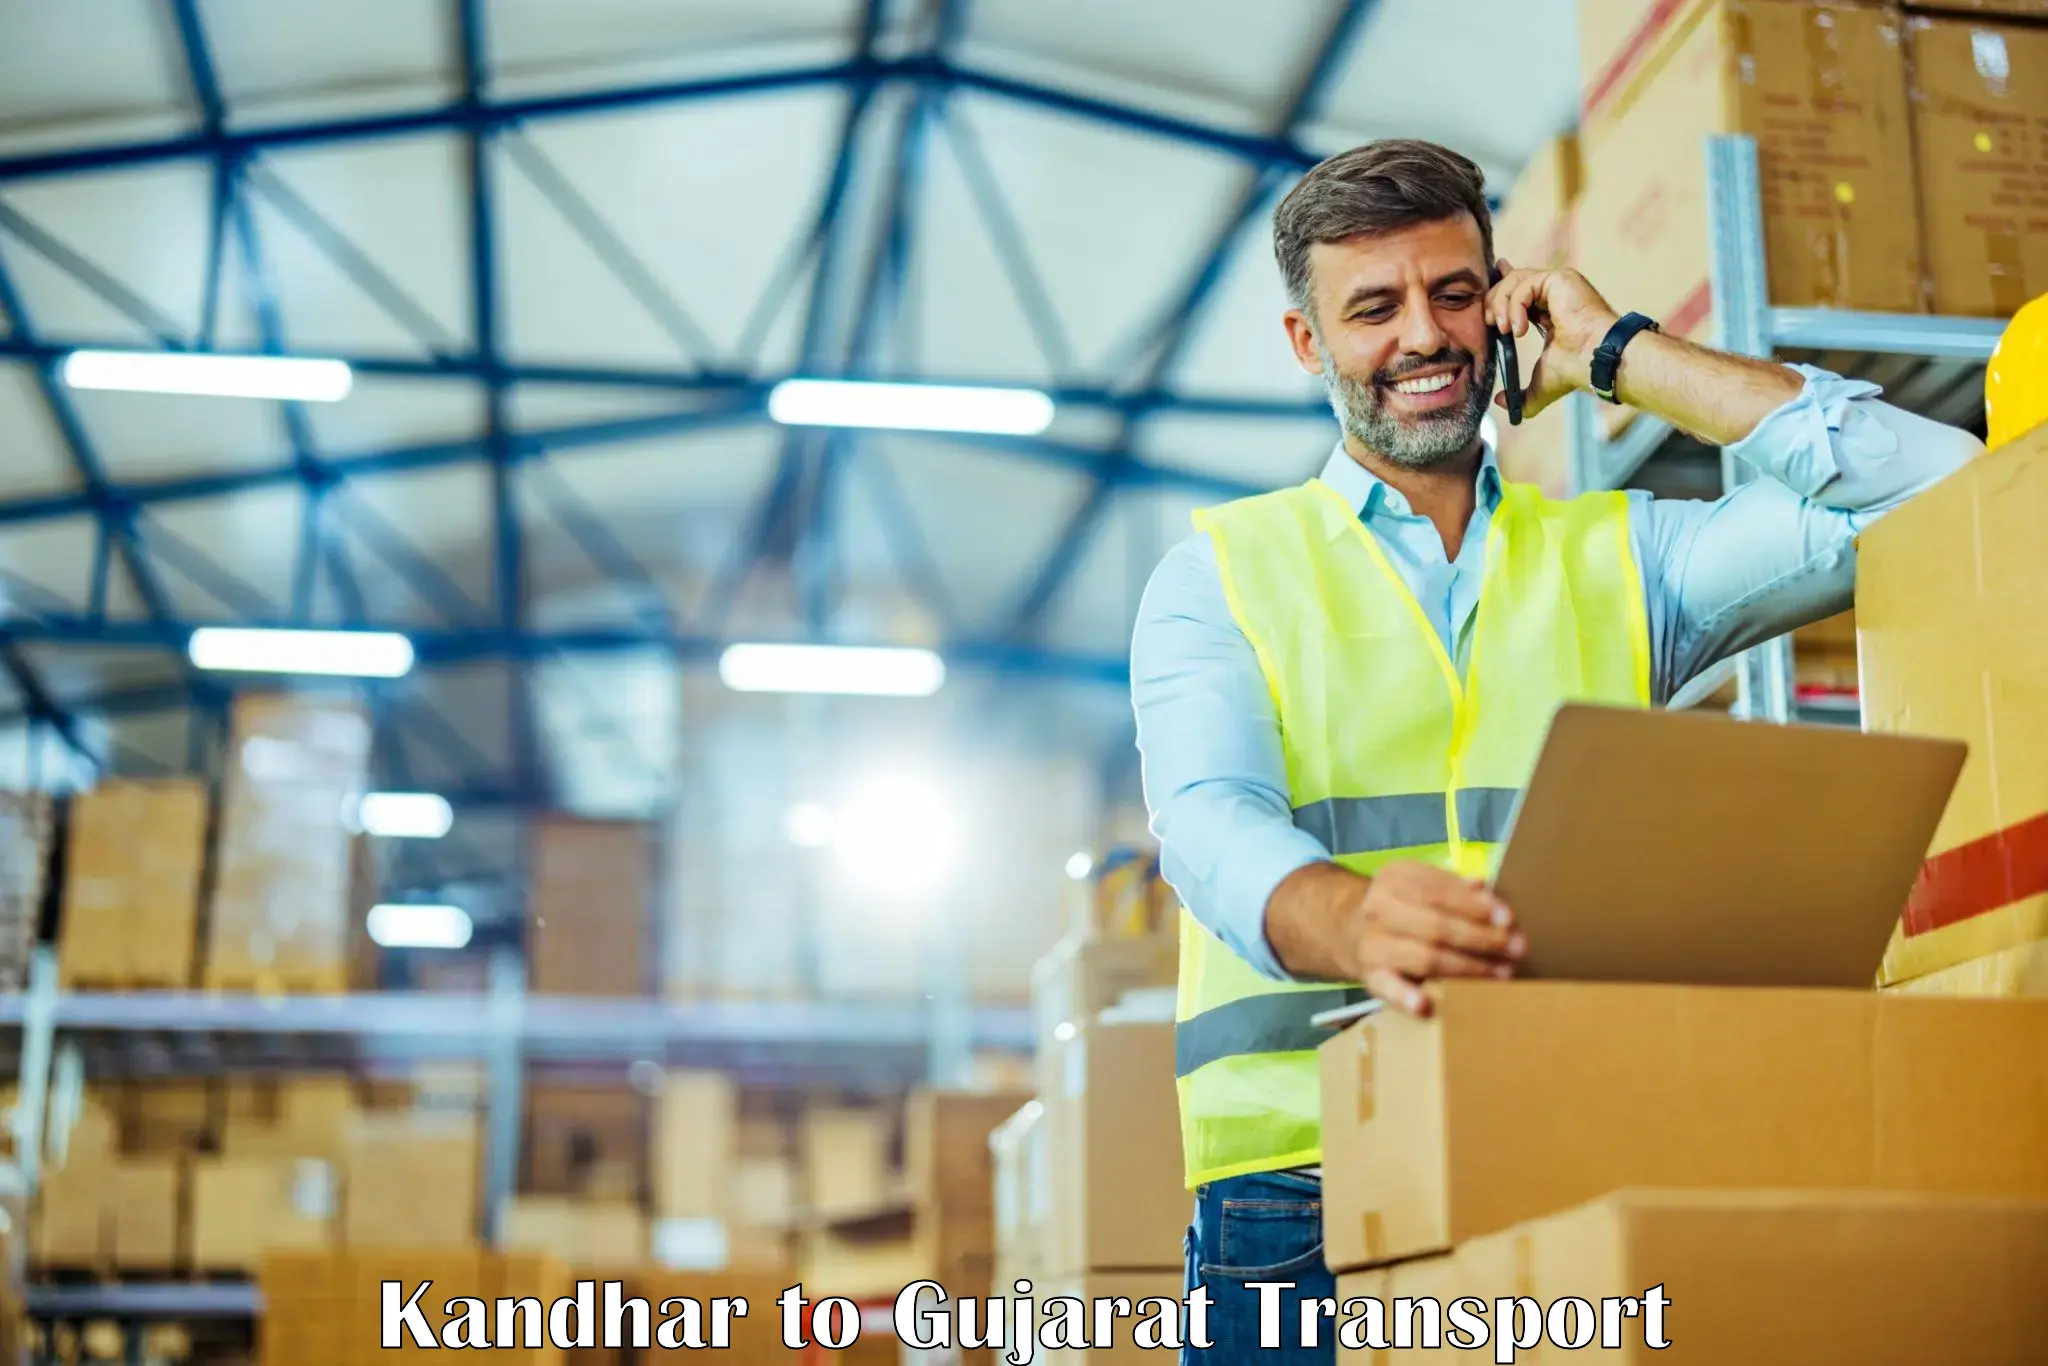 Parcel transport services Kandhar to Banaskantha